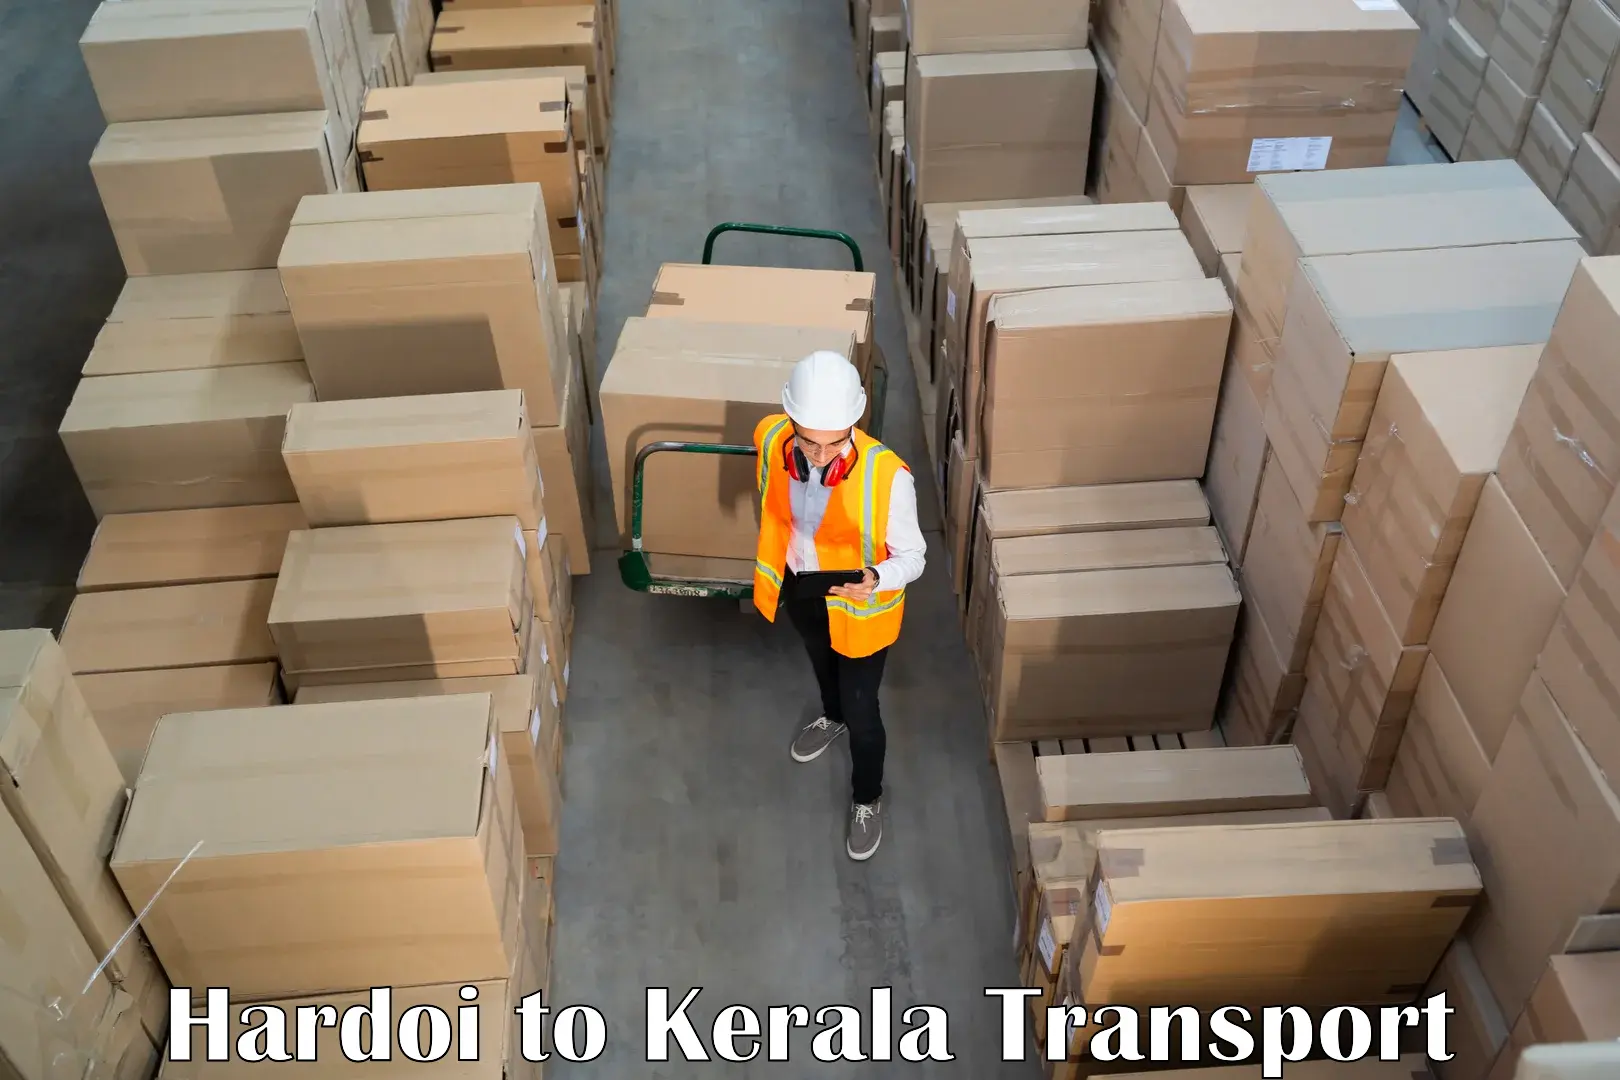 Nearby transport service Hardoi to Pallikkara